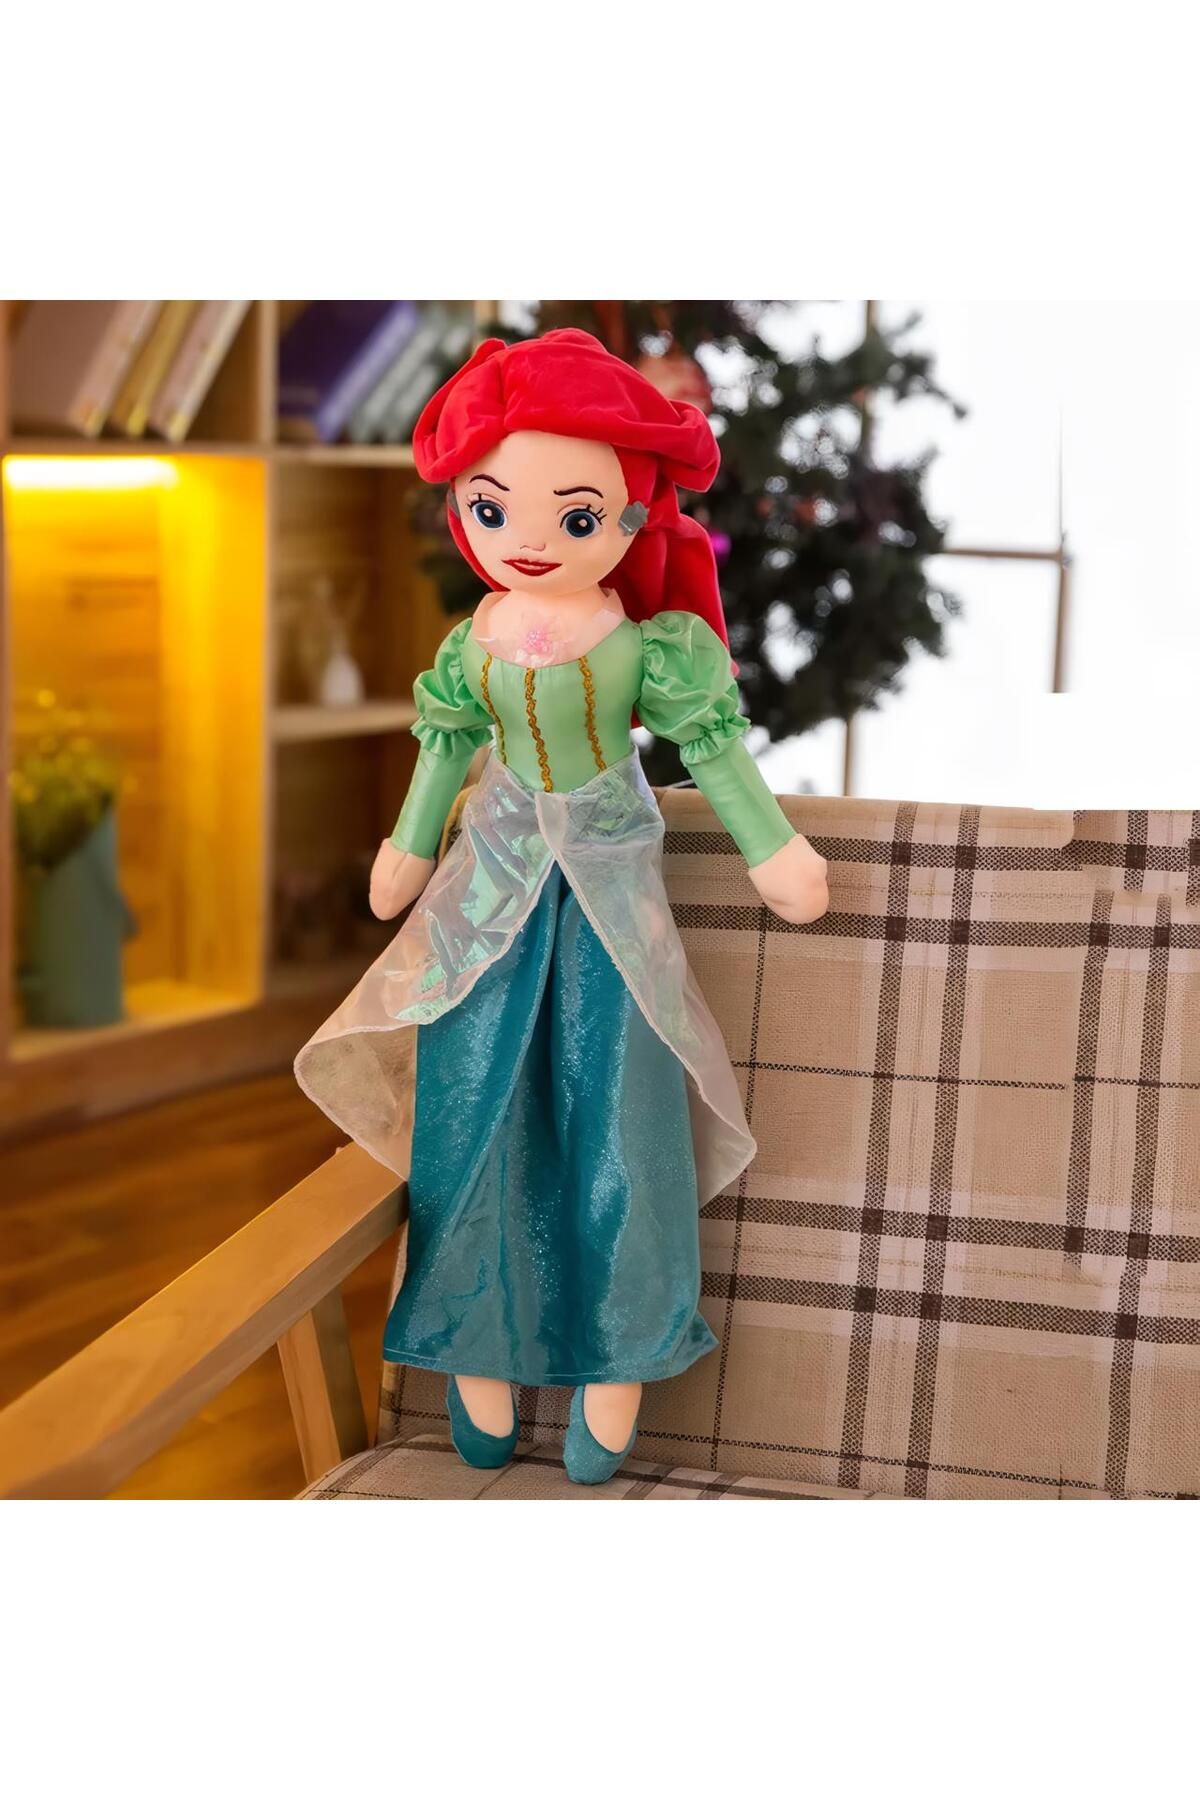 e-life shop İthal Kumaş Prensesler Serisi Prenses Ariel Karakter Figür Peluş Oyuncak Uyku & Oyun Arkadaşı 55 cm.